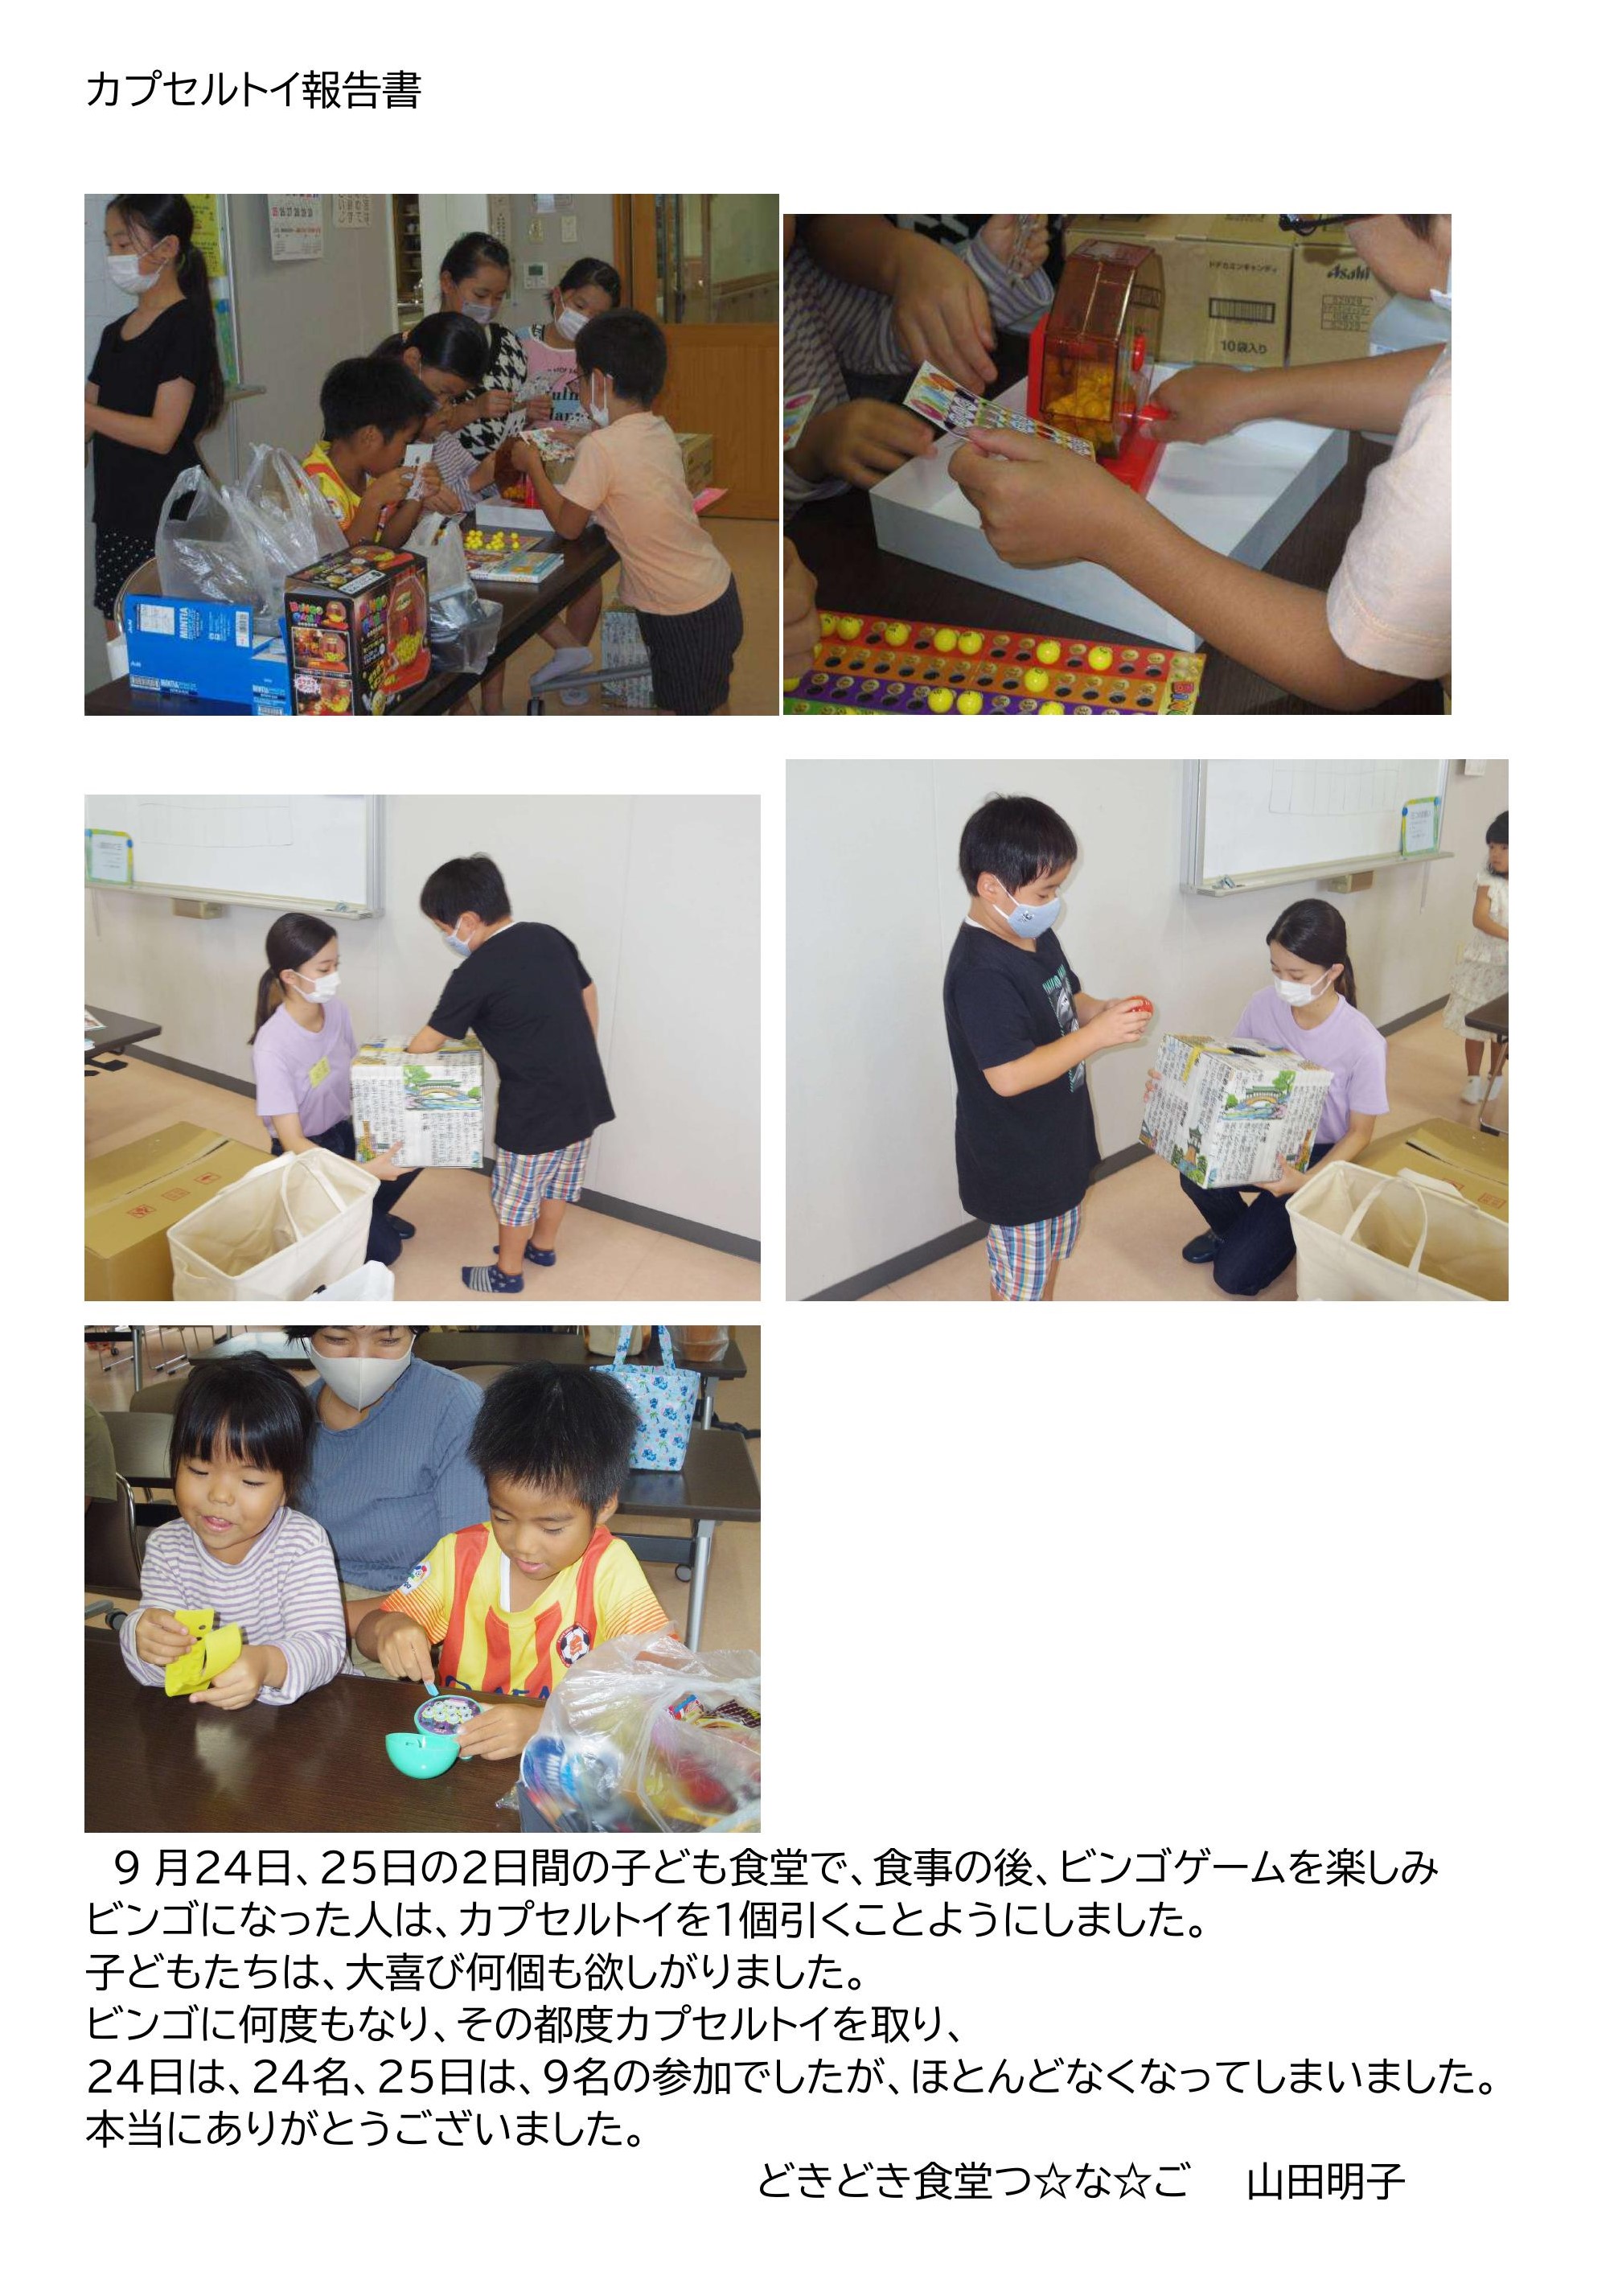 震災機構　香川県丸亀市のこども食堂「どきどきつ☆な☆ご」様からカプセルトイのお礼の写真が届く